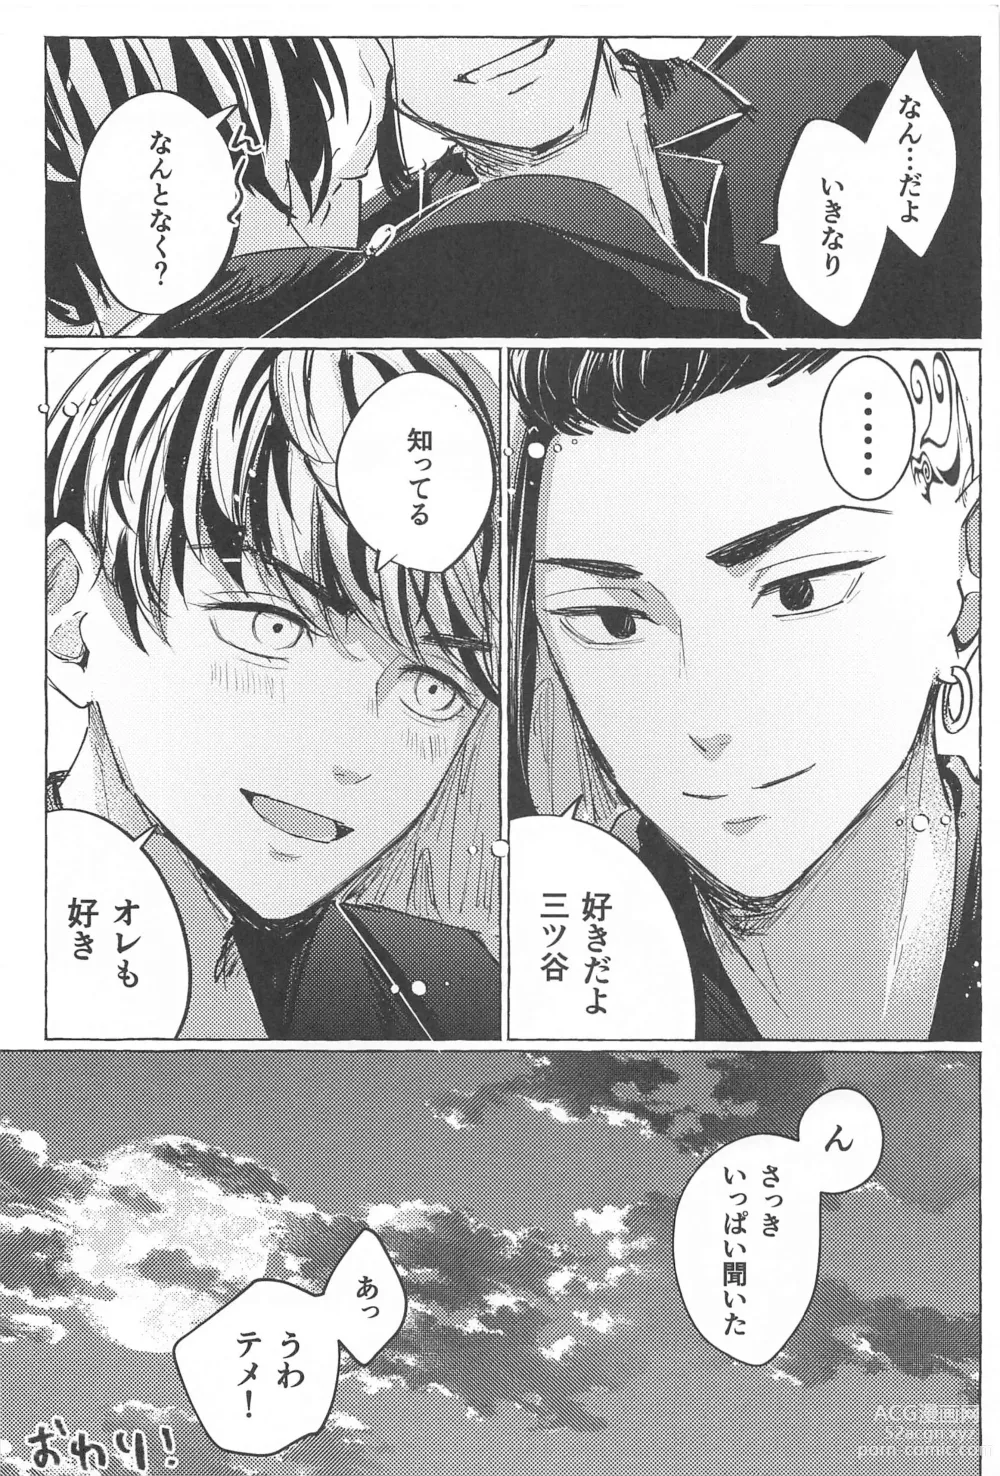 Page 23 of doujinshi 27-sai no Tokkoufuku